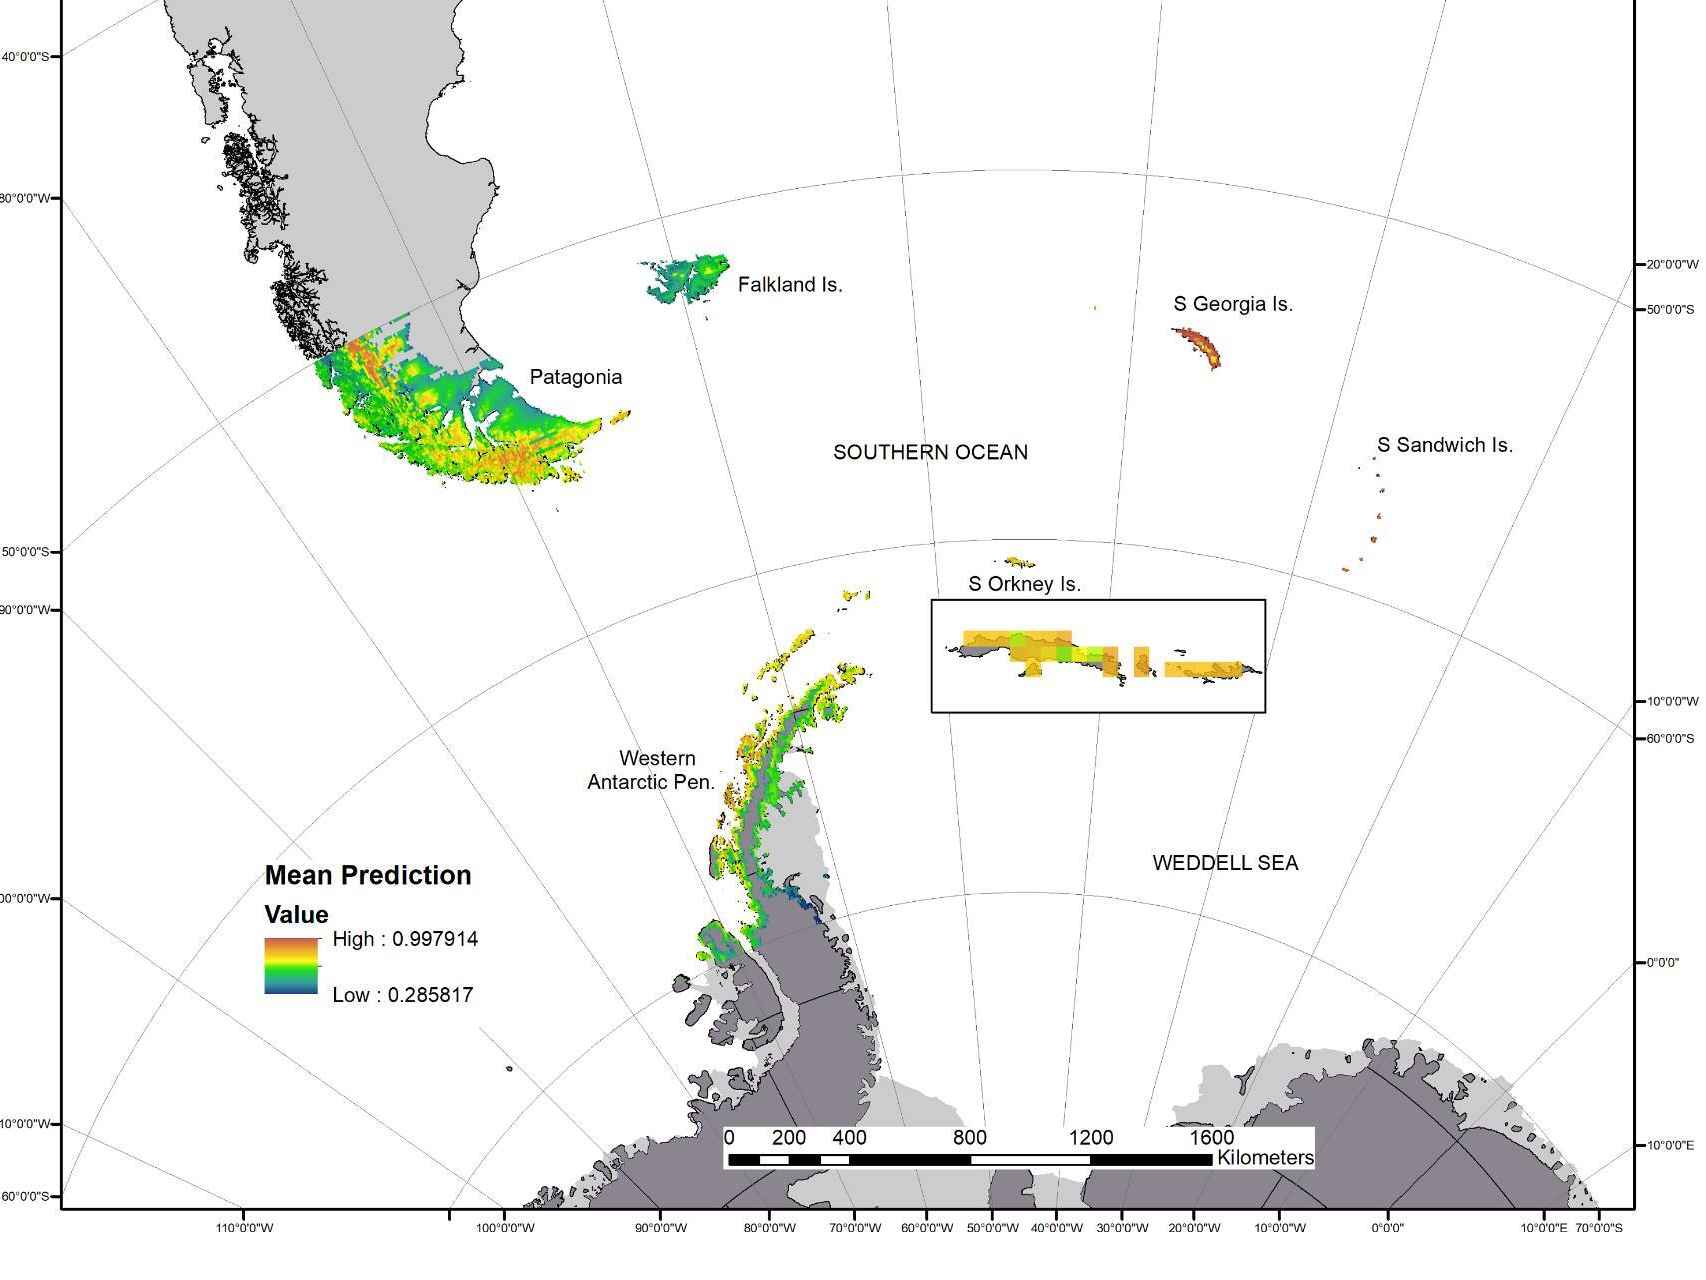 Modelo de predicción de la expansión de los mosquitos invasores por la Antártida.